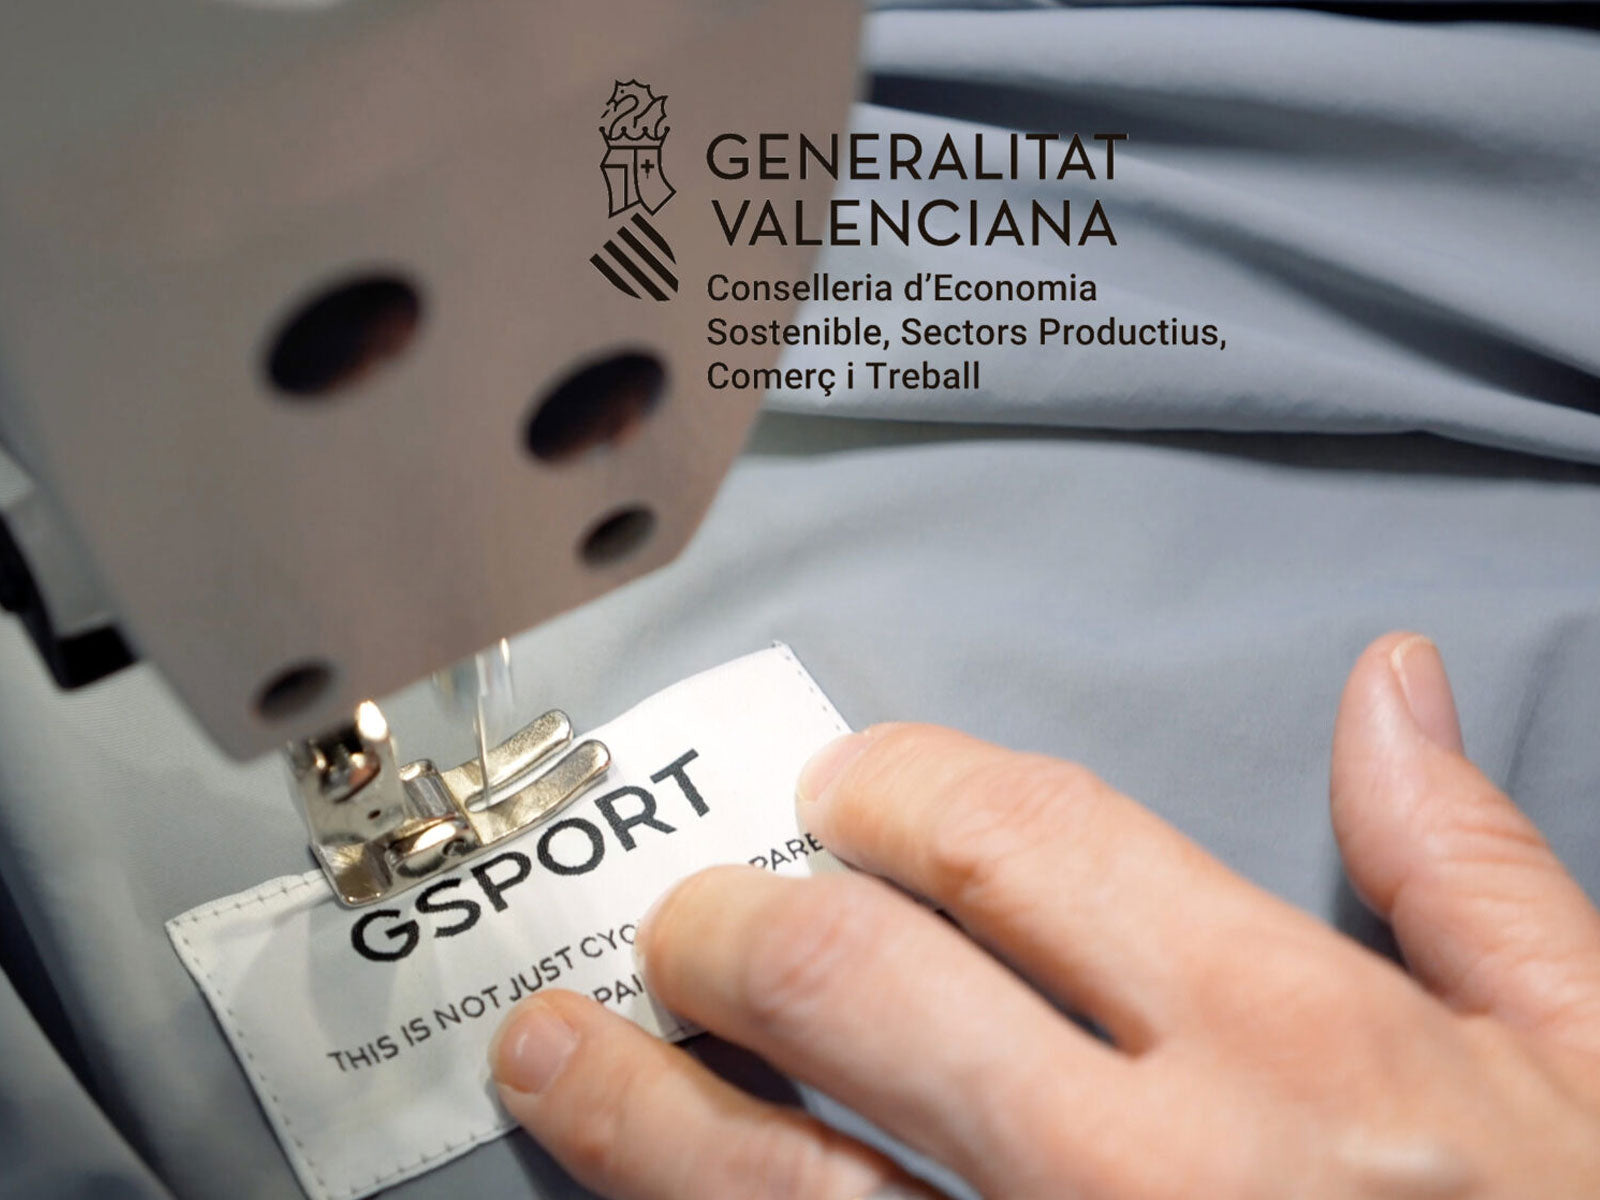 Gsport recibe subvención de la Generalitat Valenciana